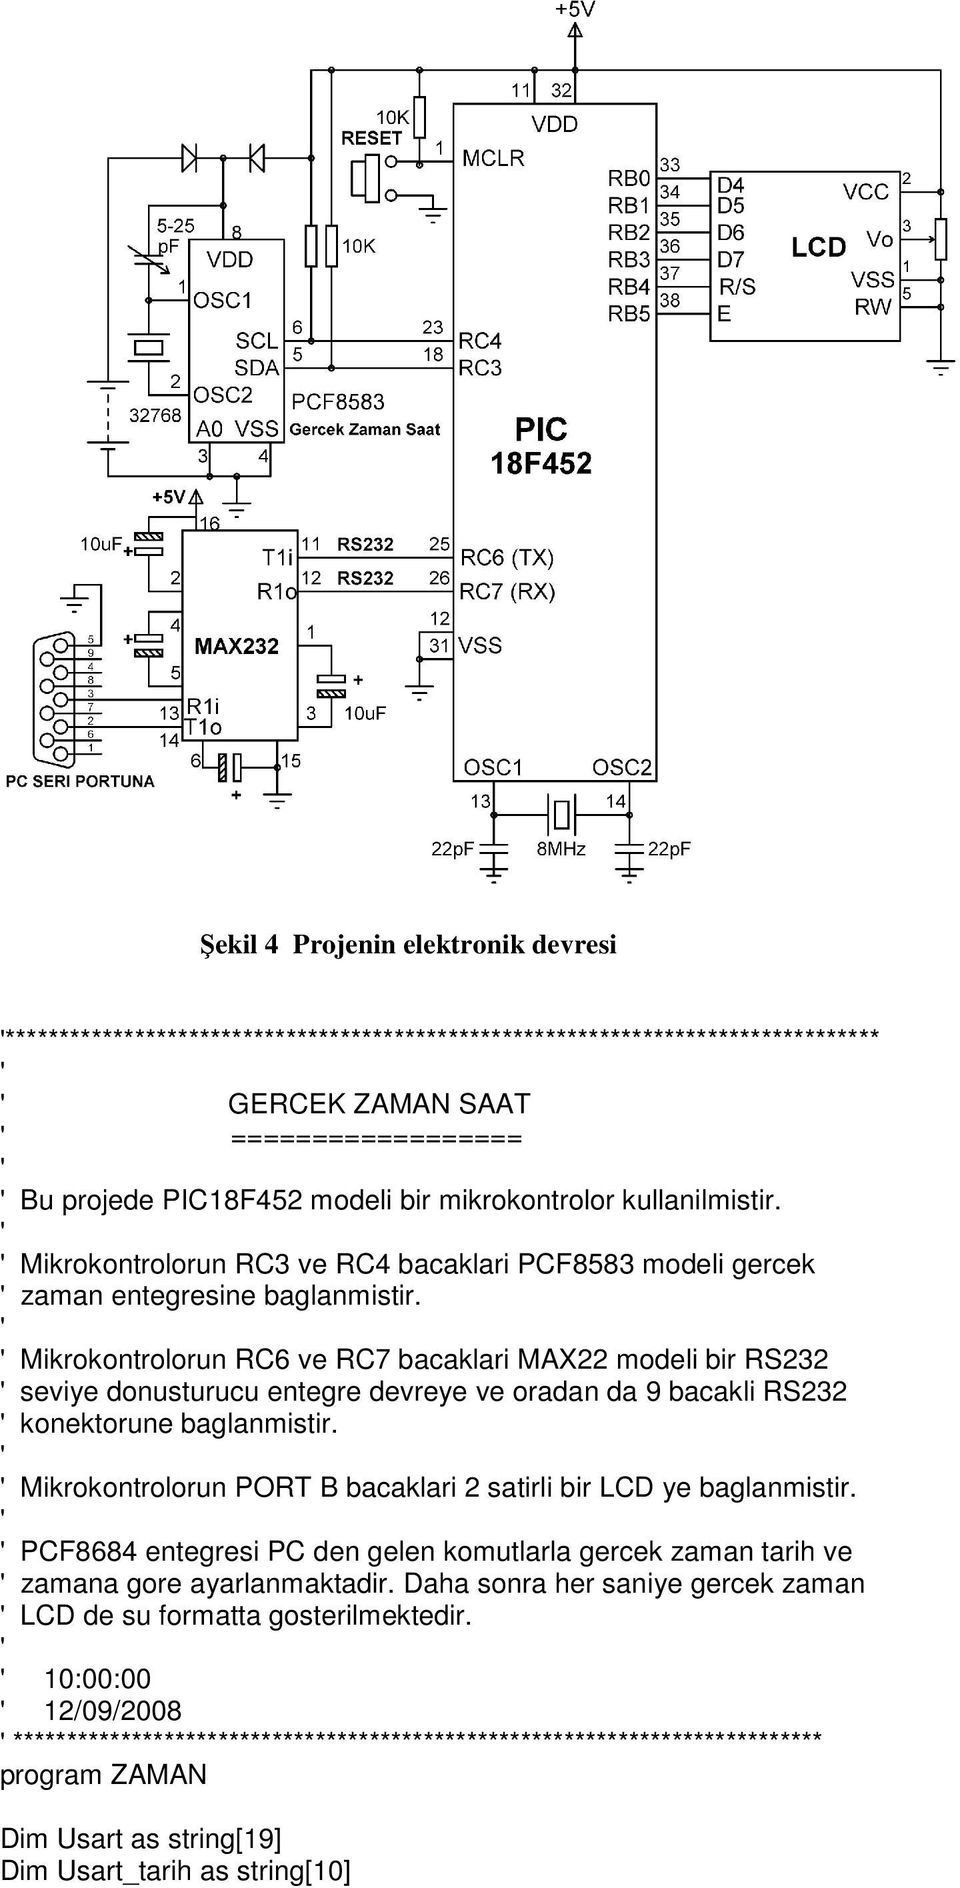 Mikrokontrolorun RC6 ve RC7 bacaklari MAX22 modeli bir RS232 seviye donusturucu entegre devreye ve oradan da 9 bacakli RS232 konektorune baglanmistir.